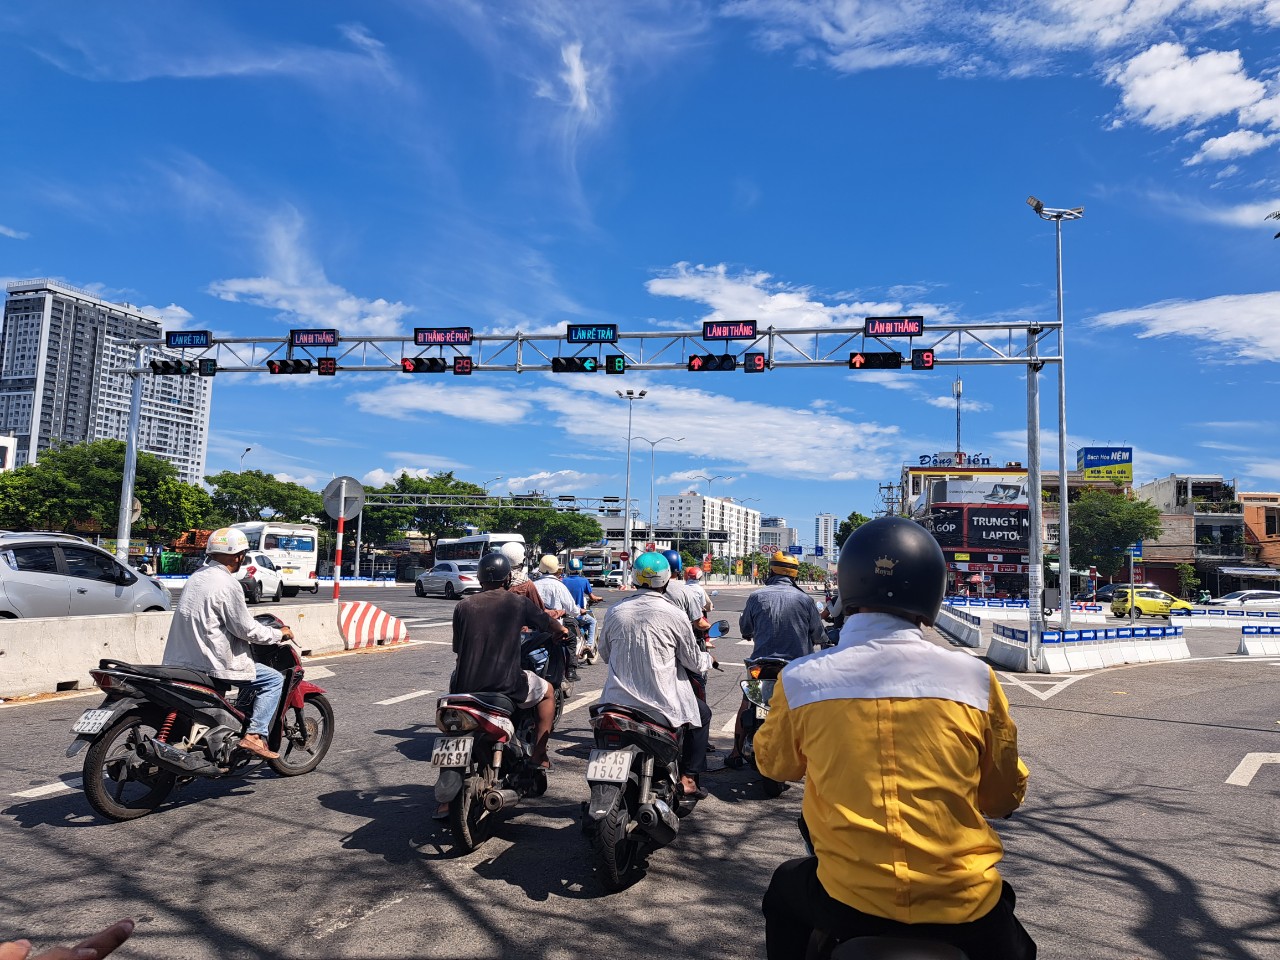 Dự án đã giải quyết được tình trạng ùn tắc cục bộ giờ cao điểm tại nút giao Võ Văn Kiệt và Nguyễn Văn Thoại. Ảnh: Nguyễn Linh